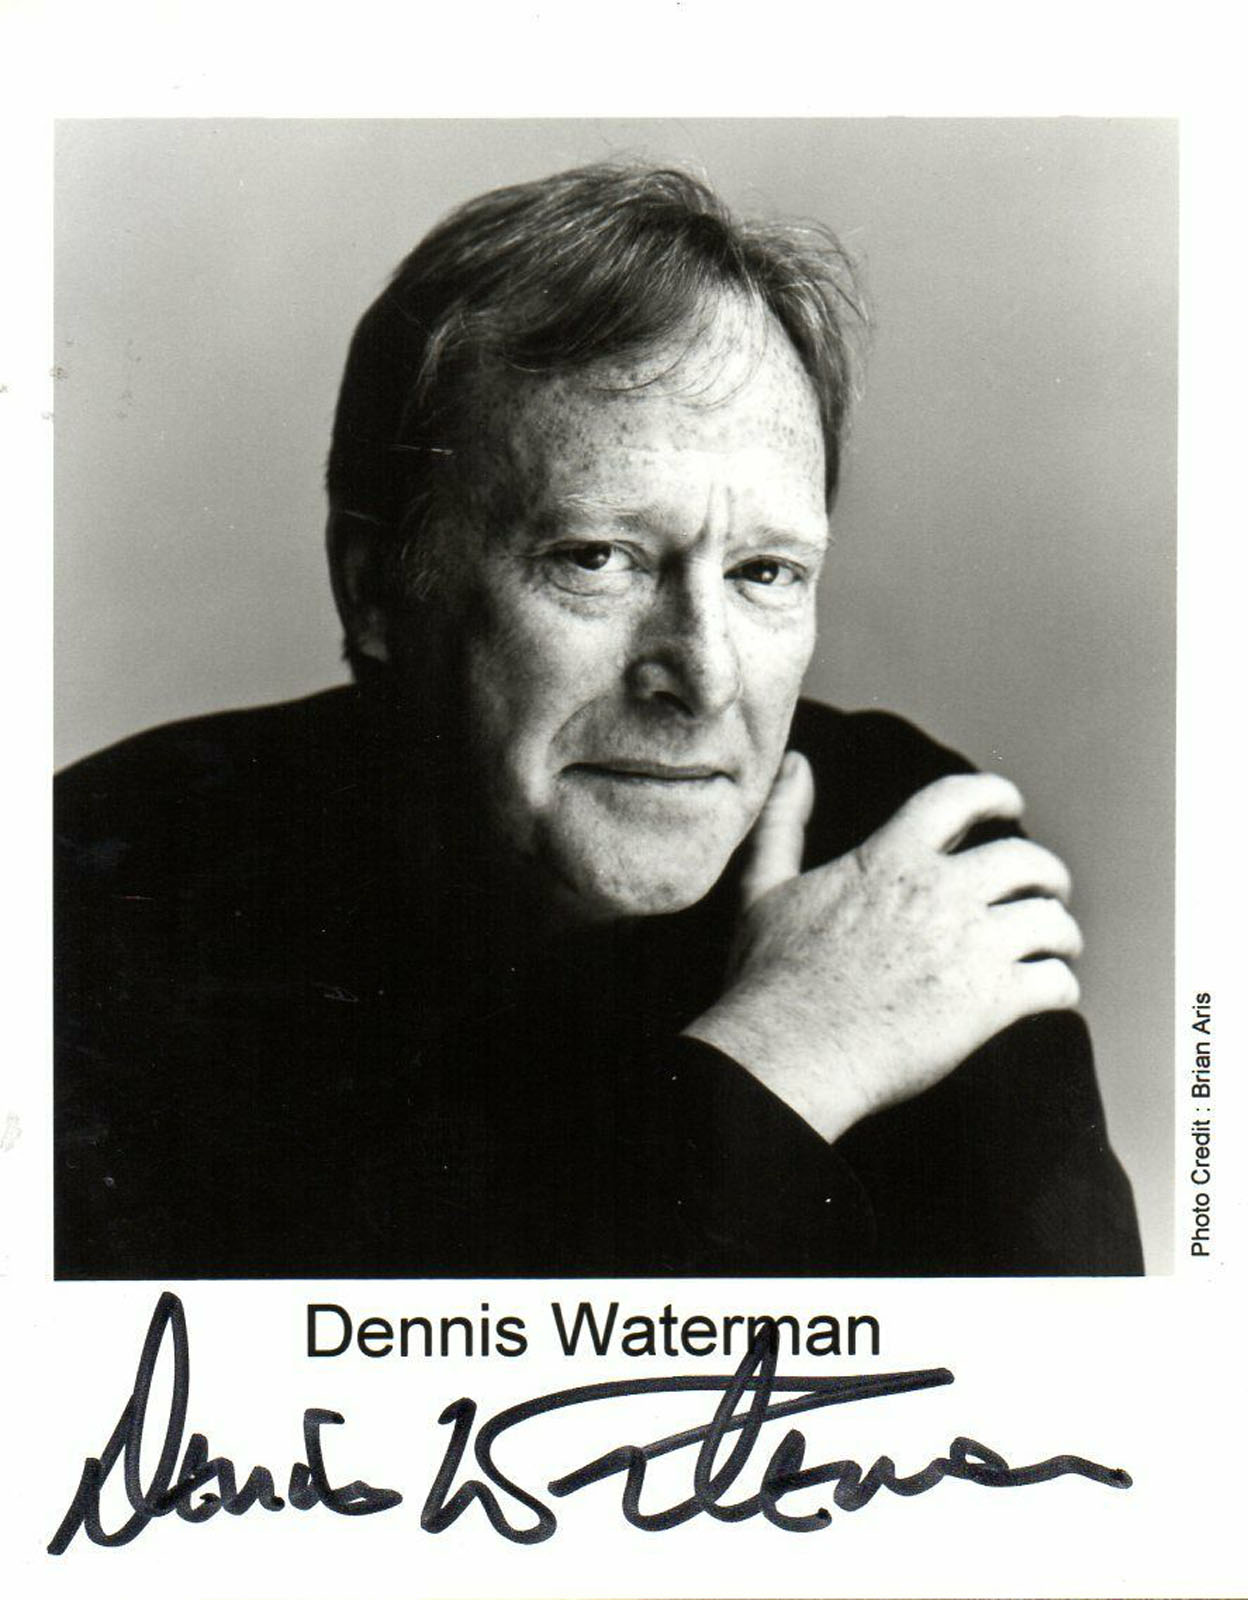 Dennis Waterman